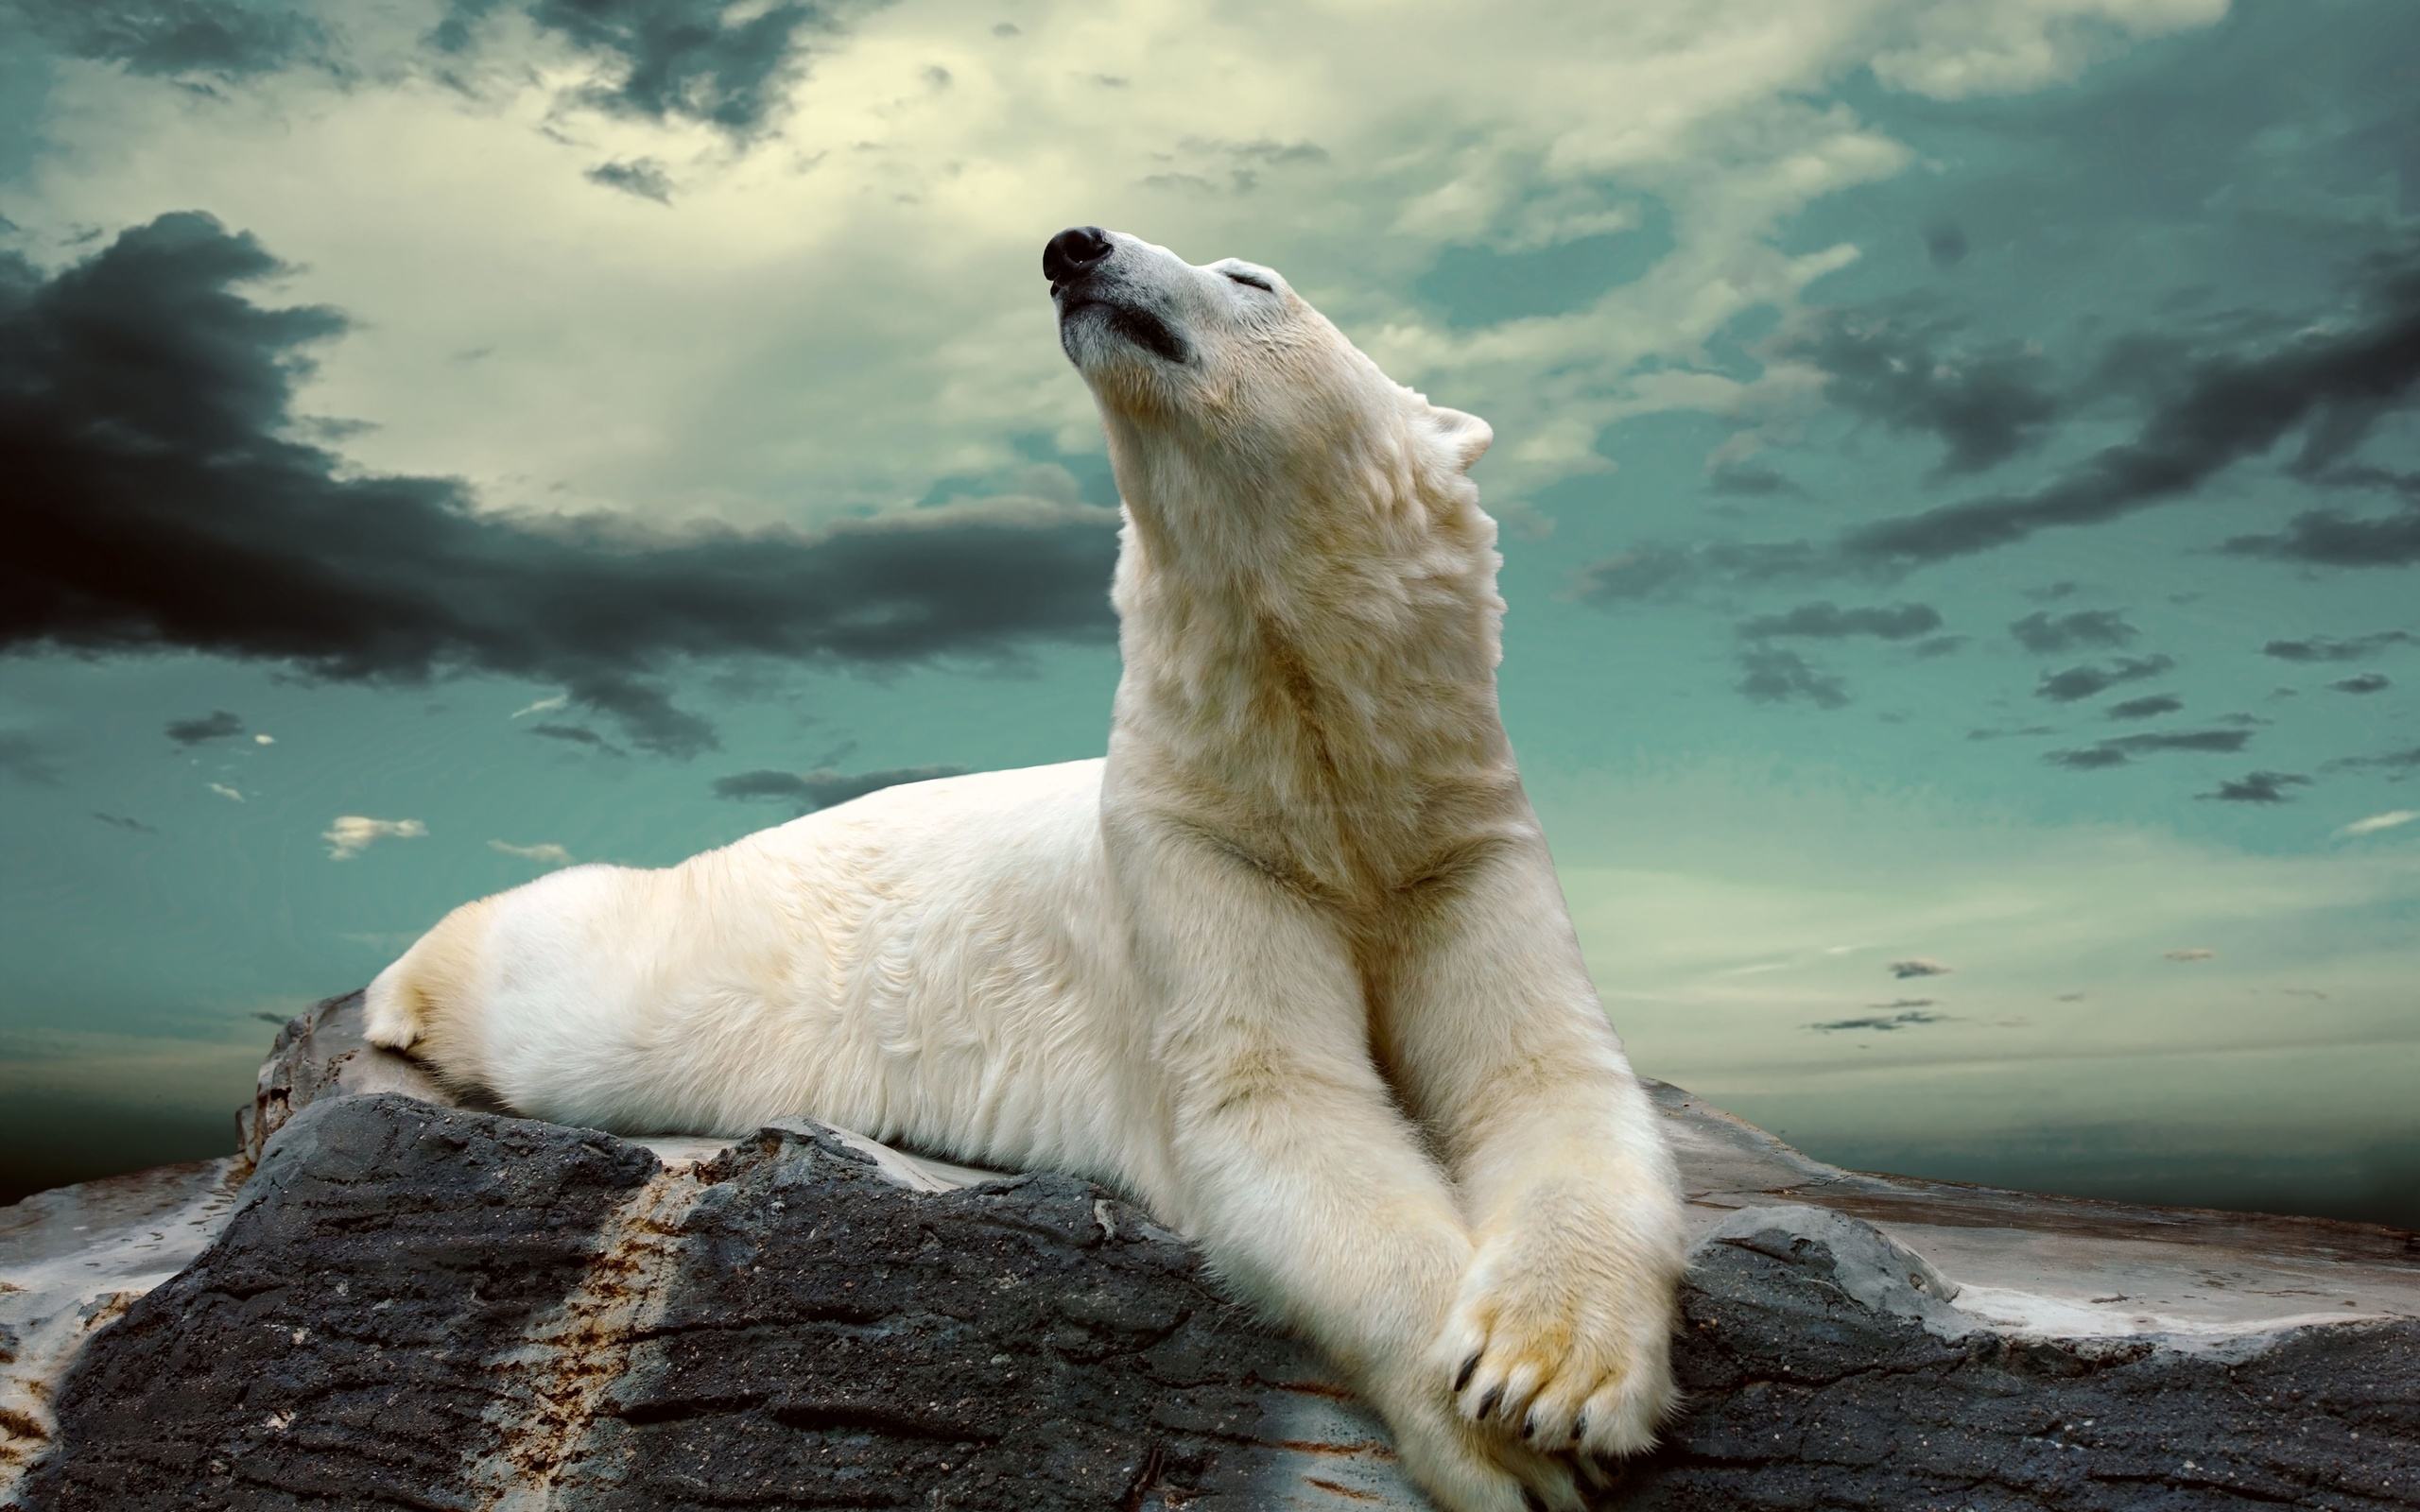 Hình ảnh gấu Bắc cực: Khám phá đất nước tuyết trắng và những loài động vật sống trong vùng cực. Với hình ảnh gấu Bắc cực đầy màu sắc, hãy cho mình một cơ hội để khám phá thế giới quyến rũ này. Chúng sẽ khiến bạn cảm thấy thật sự ấn tượng.